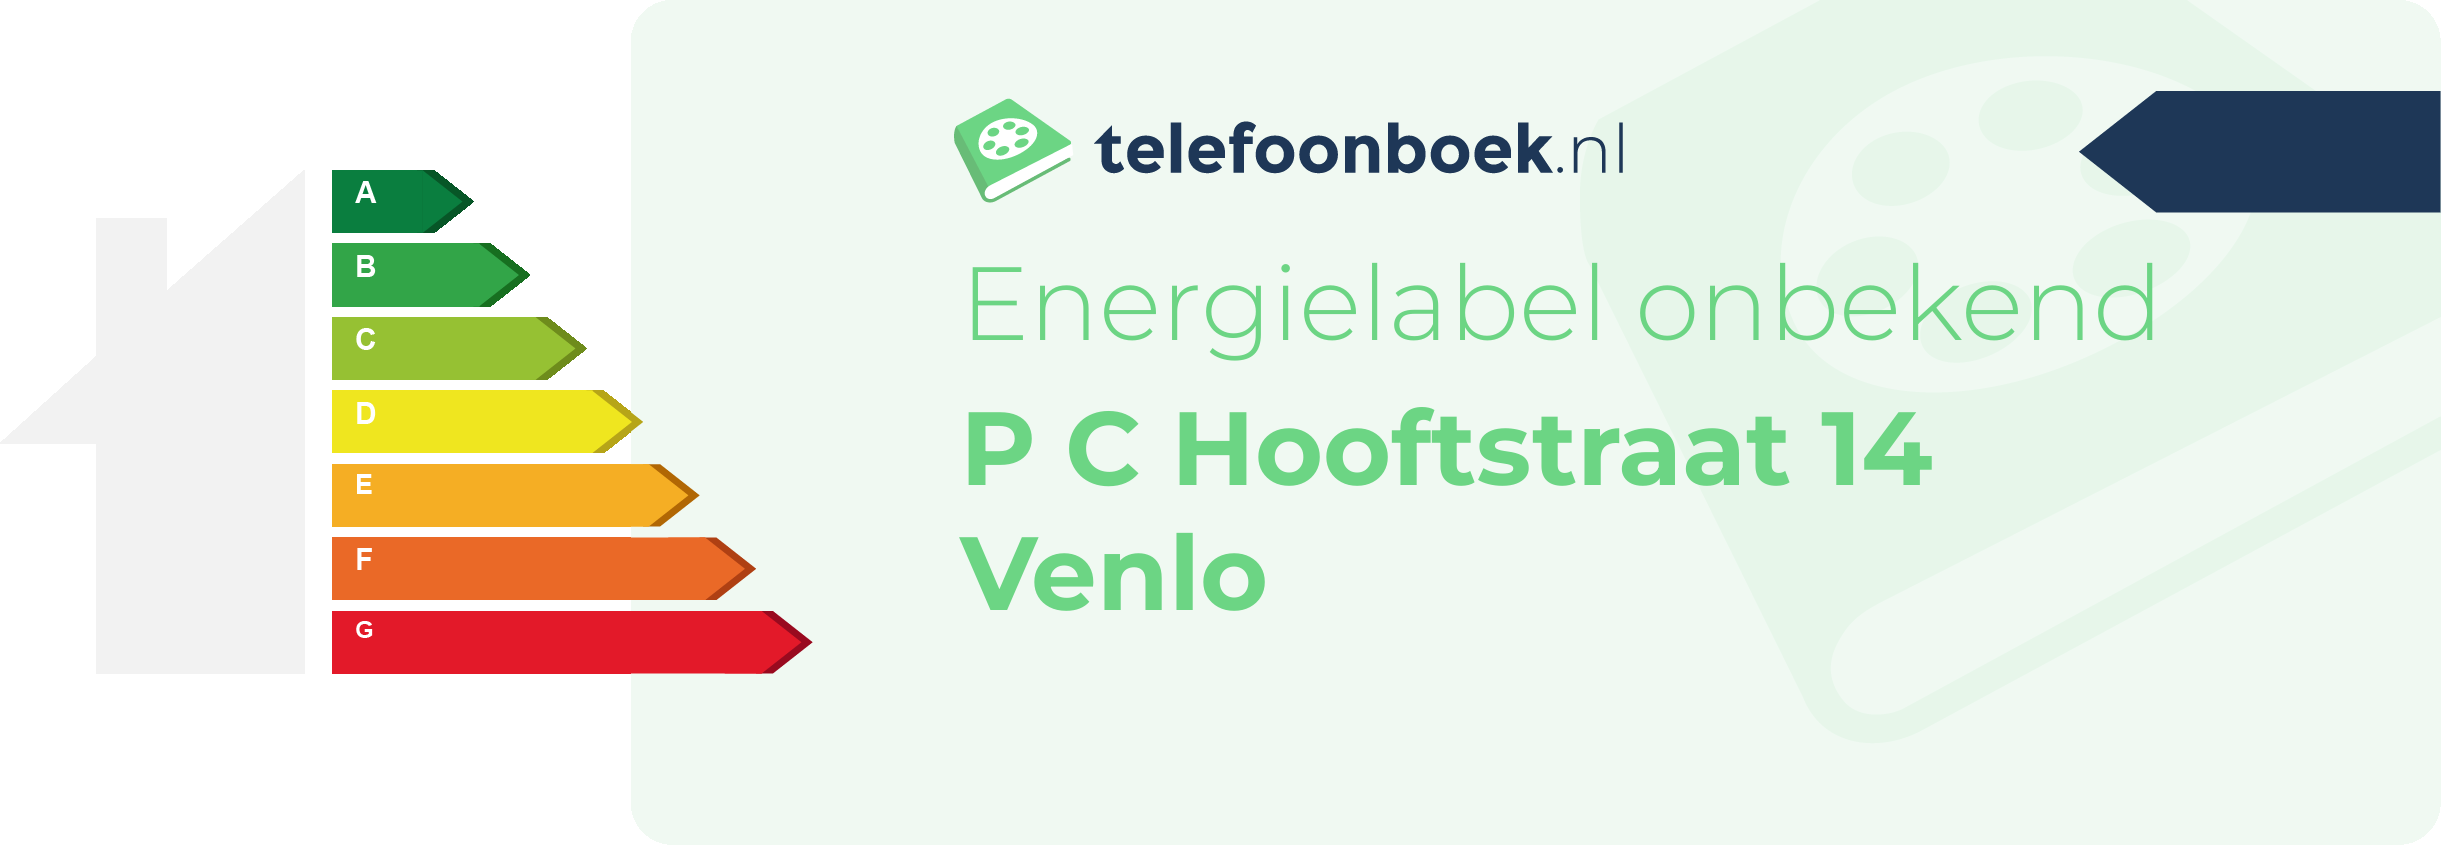 Energielabel P C Hooftstraat 14 Venlo